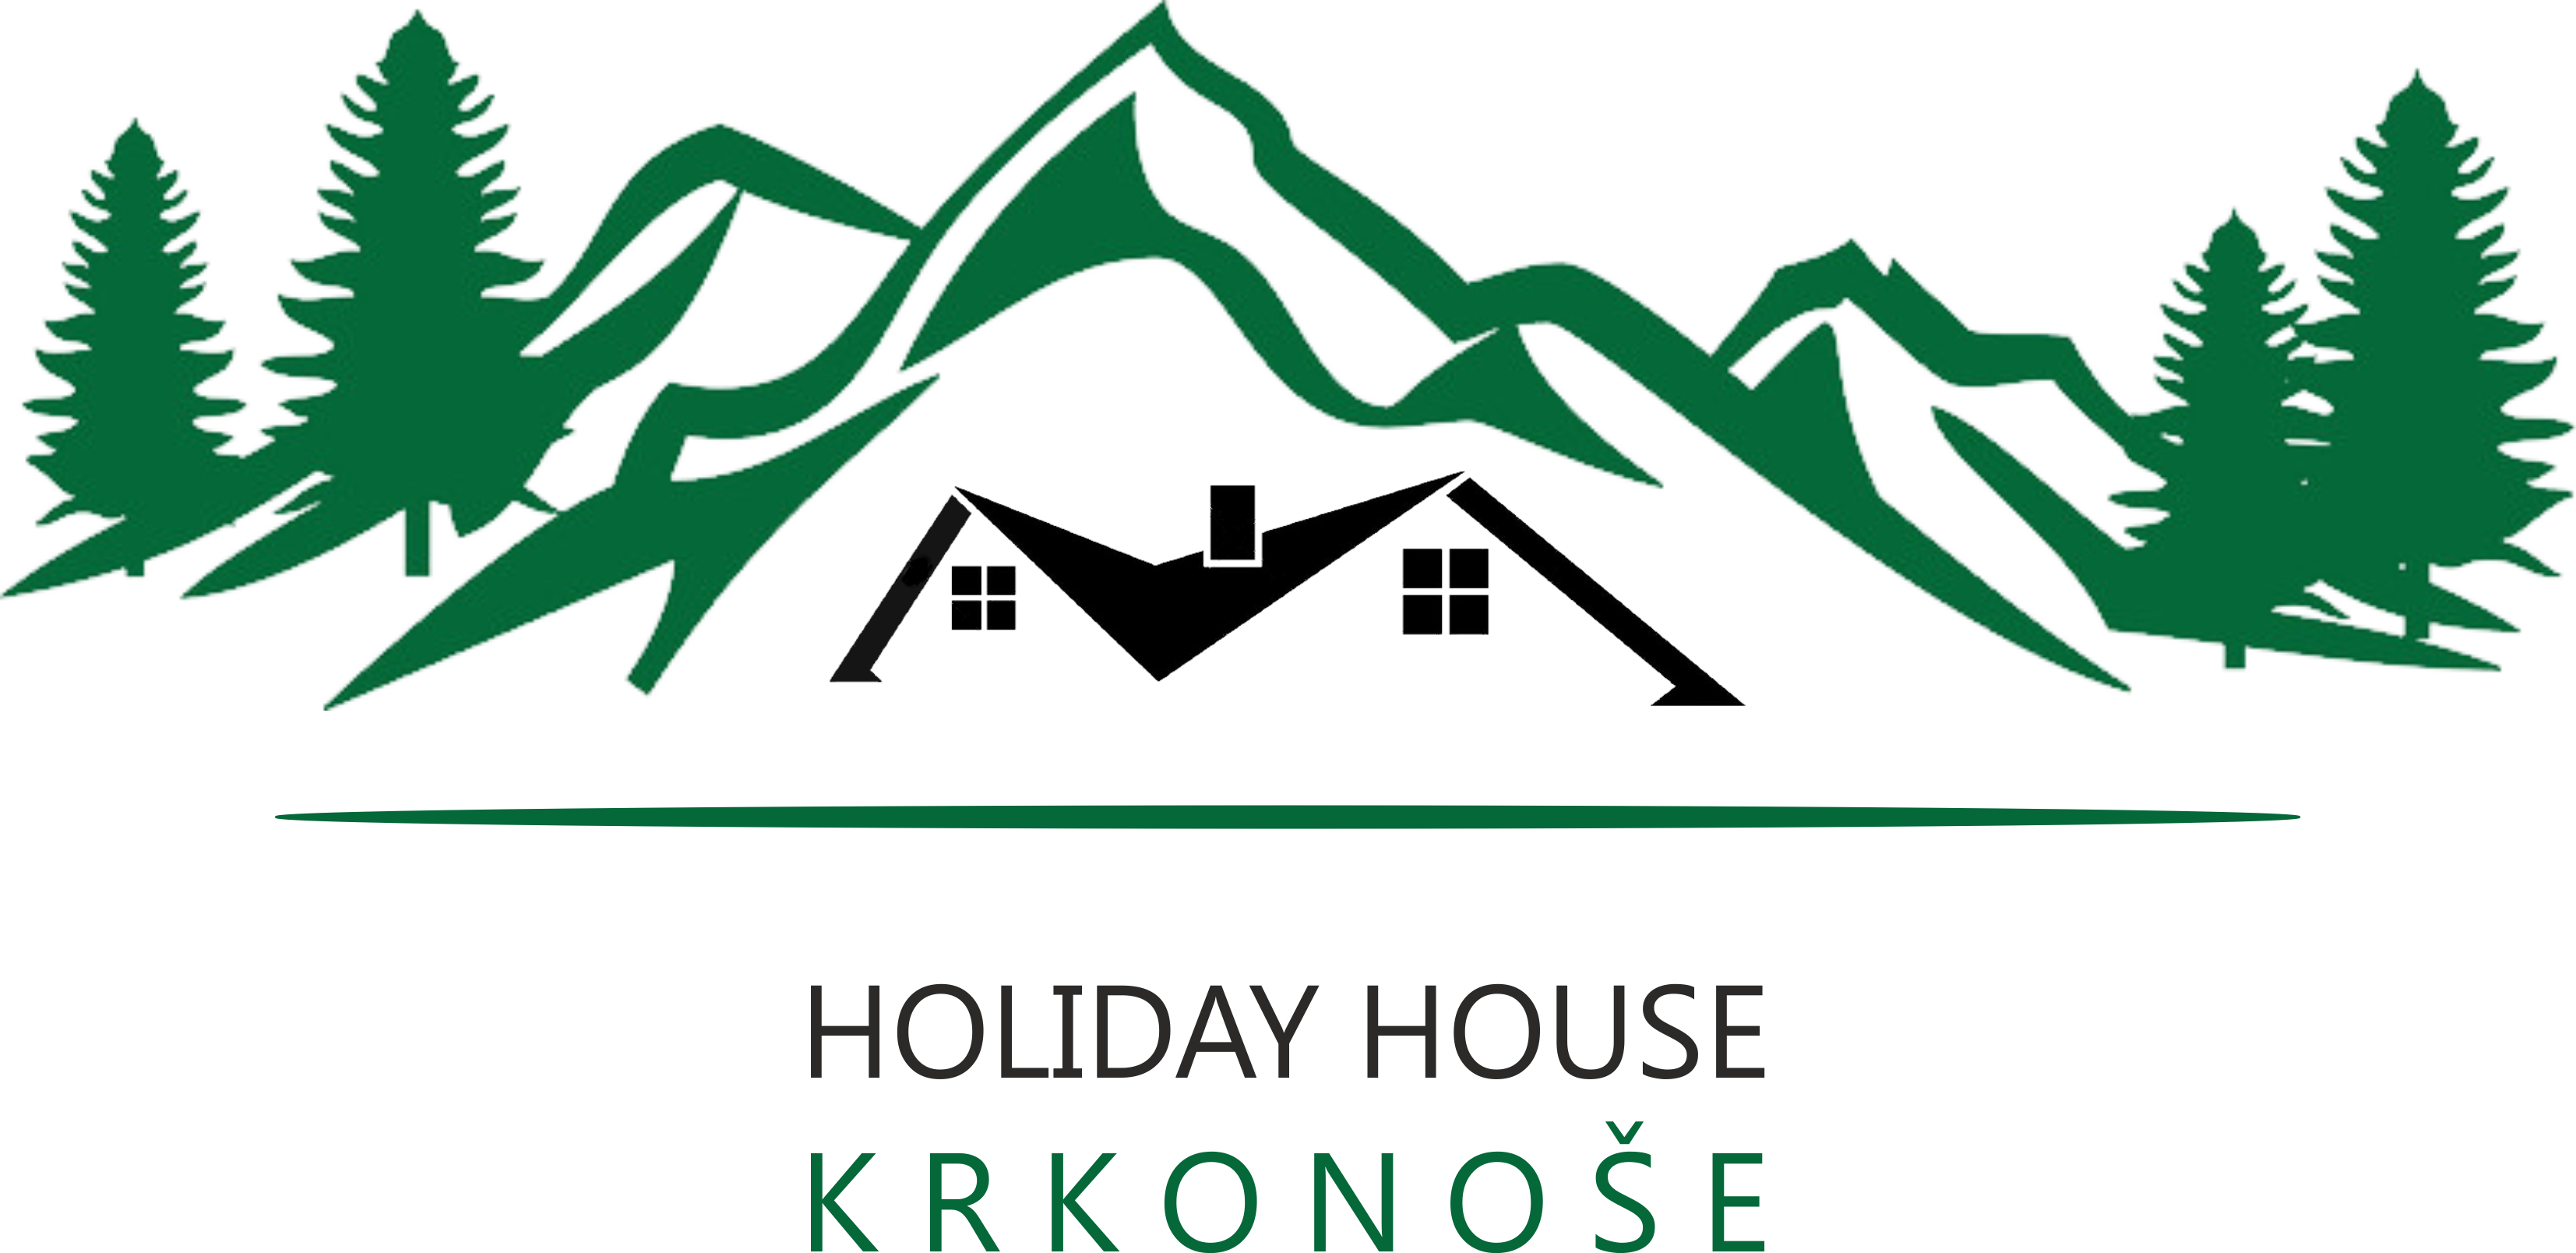 Holiday House - Green Mountain Logo Design (3307x1608)